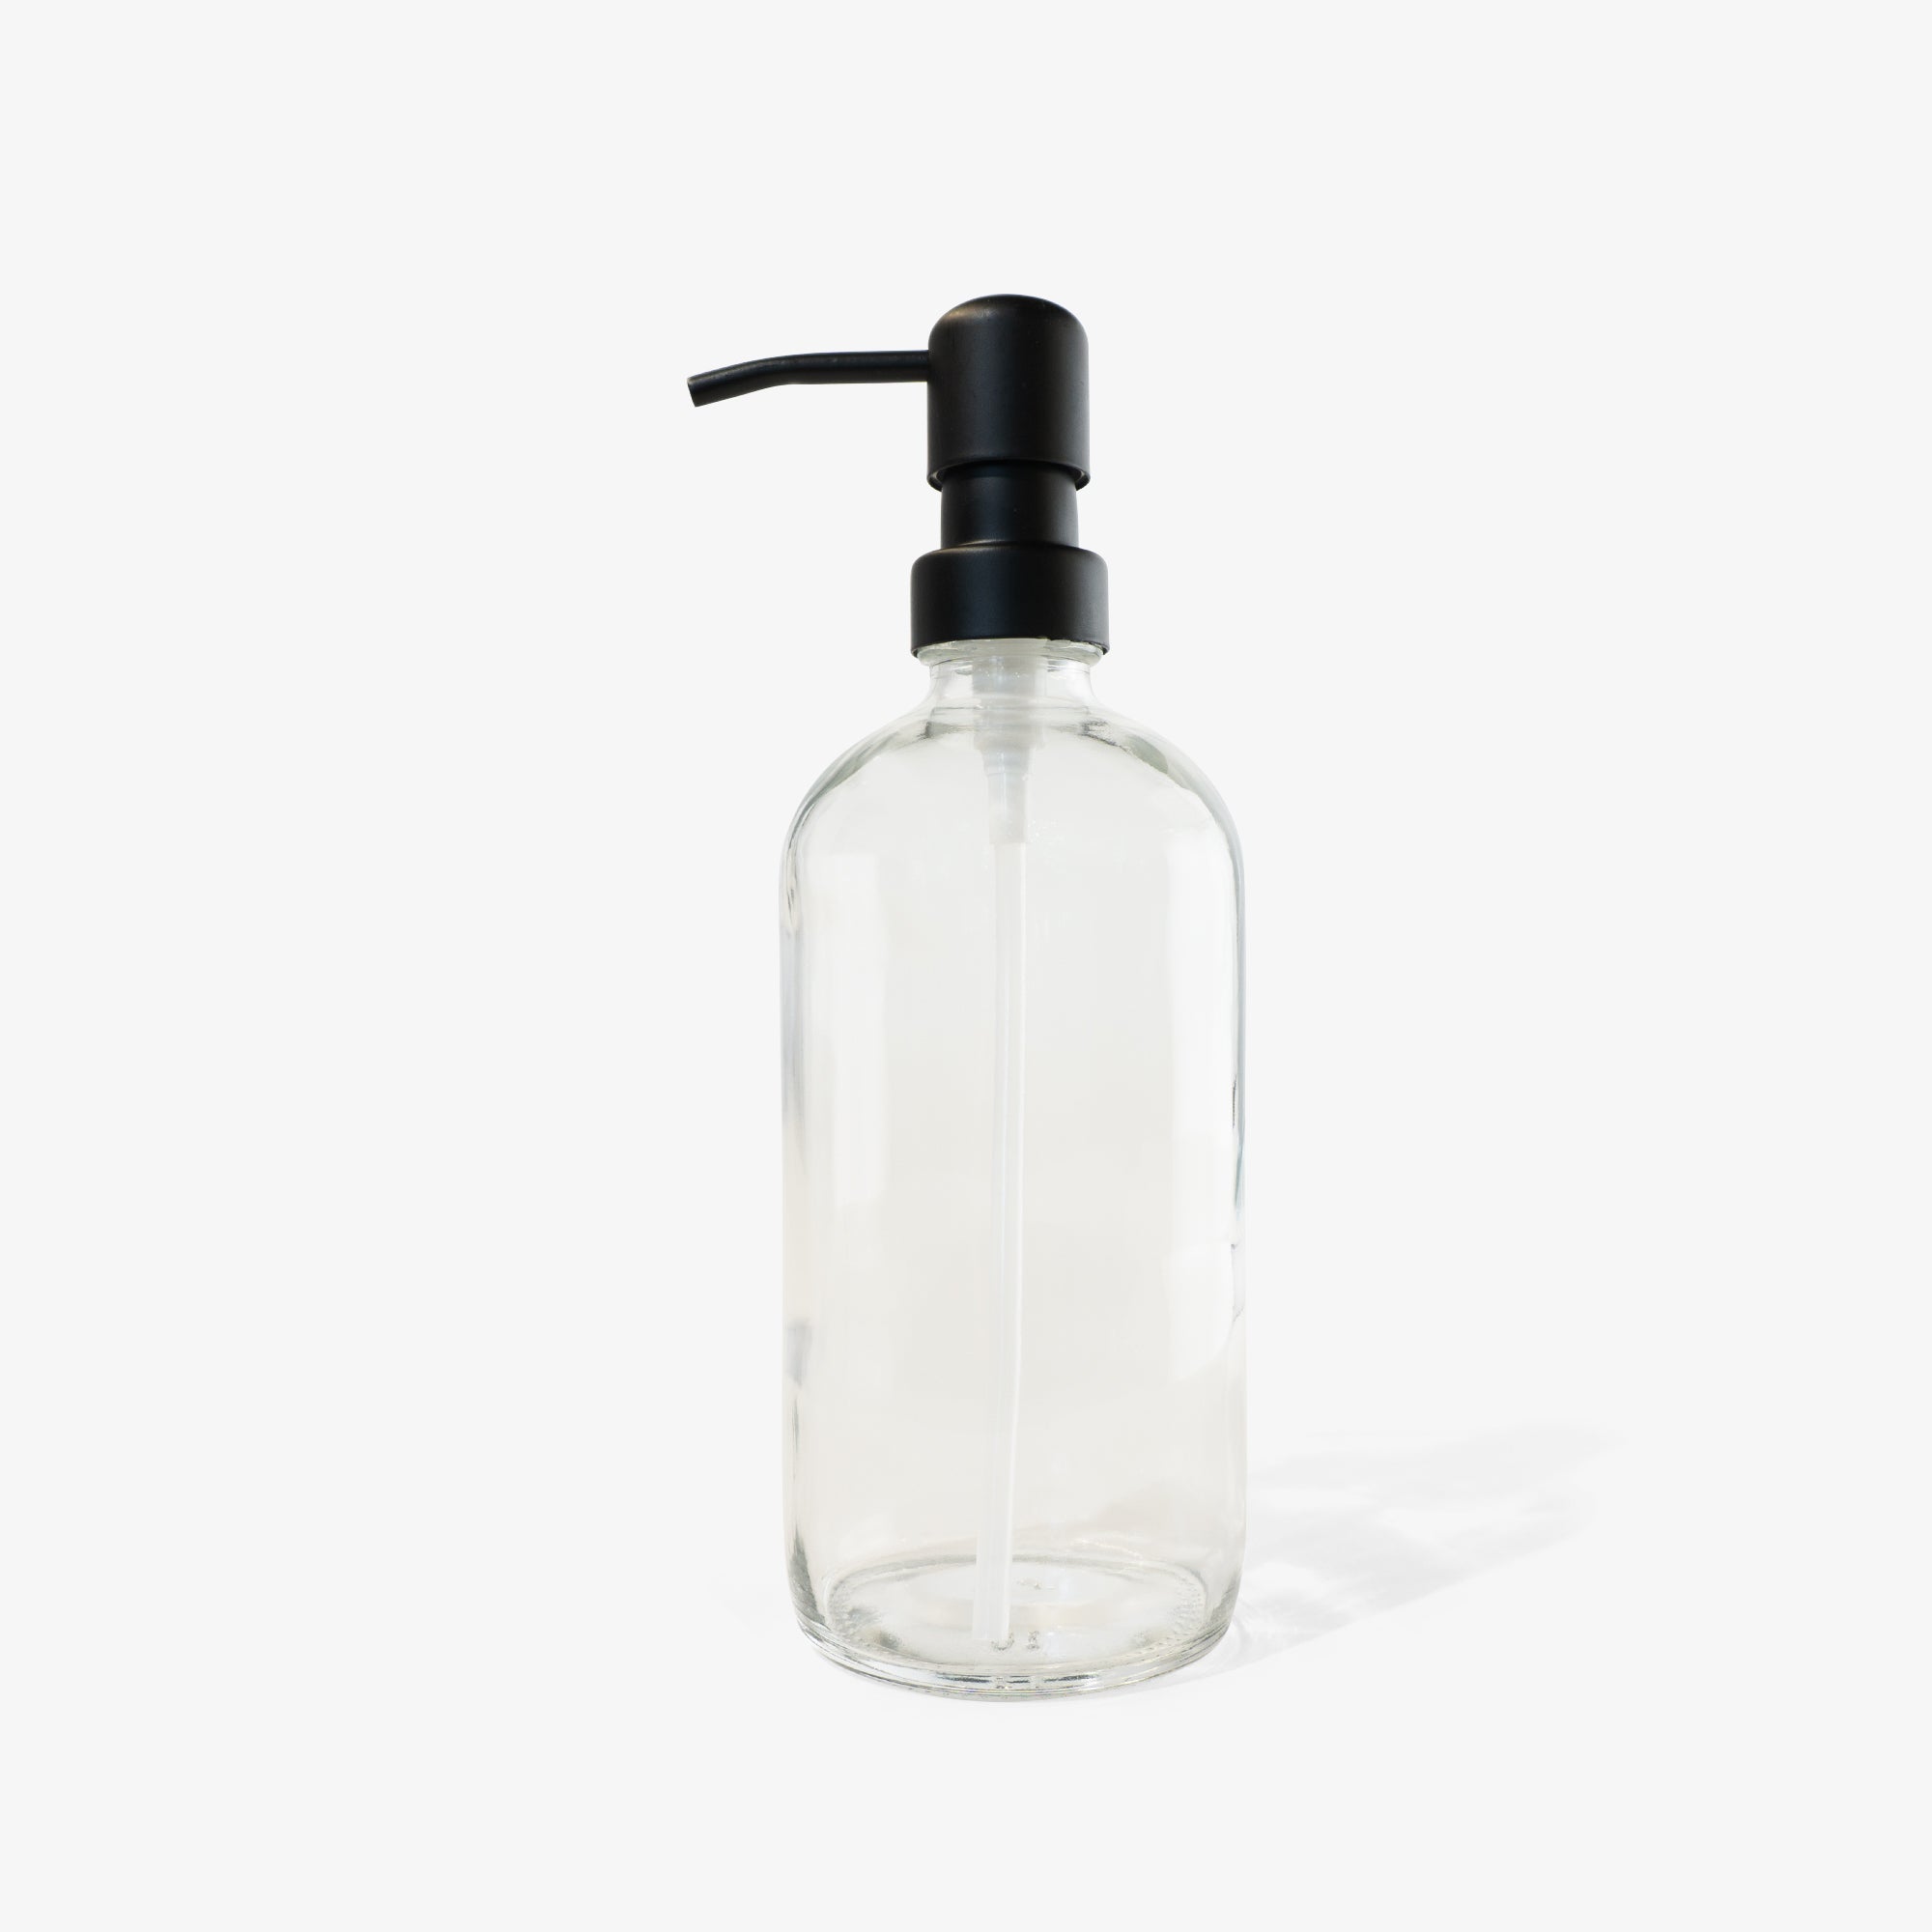 soap-glass-bottle-black-pump